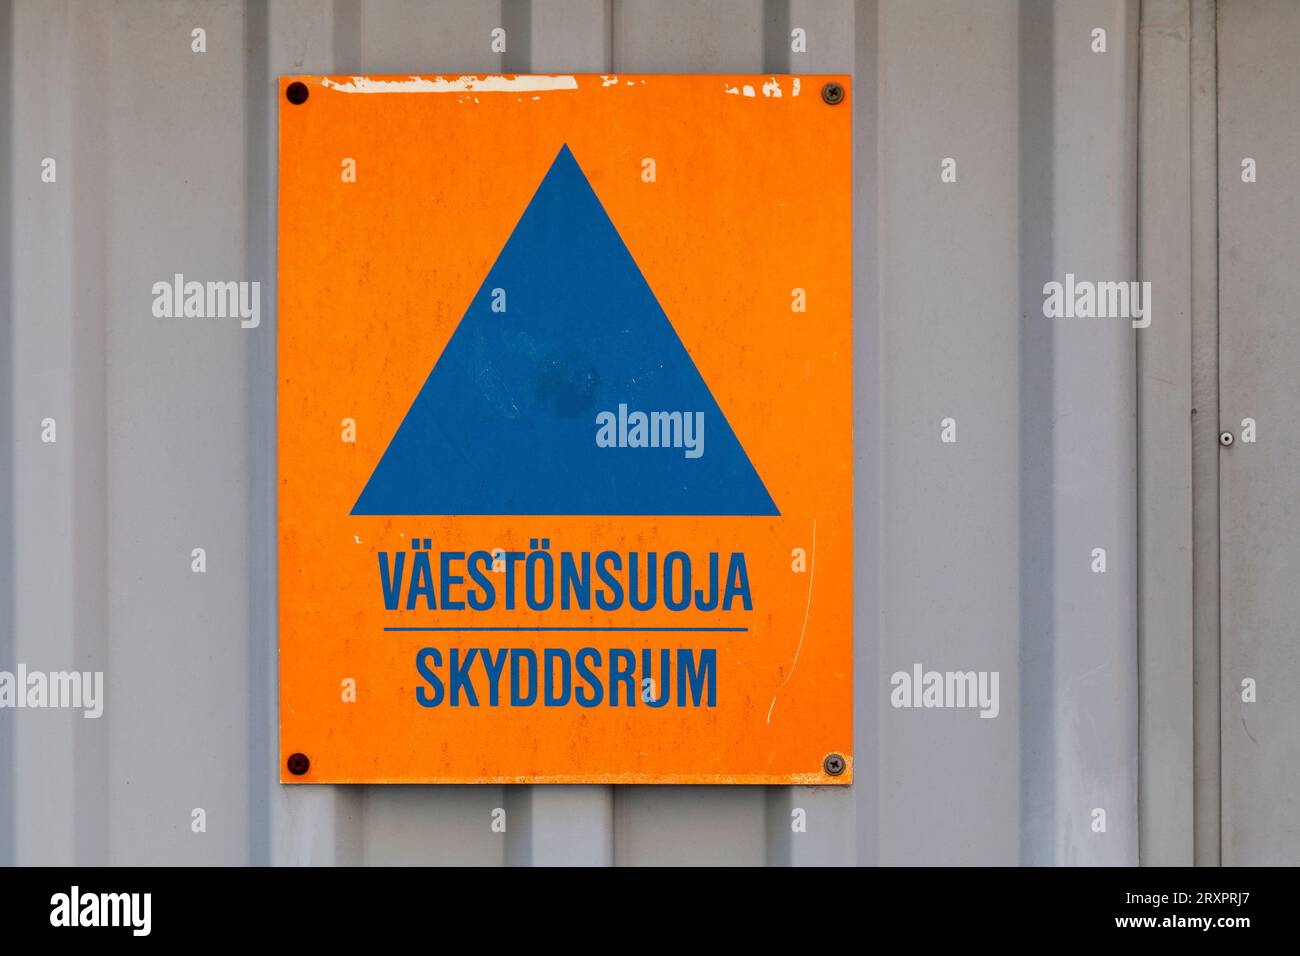 Blaues Dreieck auf einem orangefarbenen Schild mit der Aufschrift „Väestönsuoja skyddsrum“, was auf Englisch „Luftschutzbunker“ bedeutet. Stockfoto